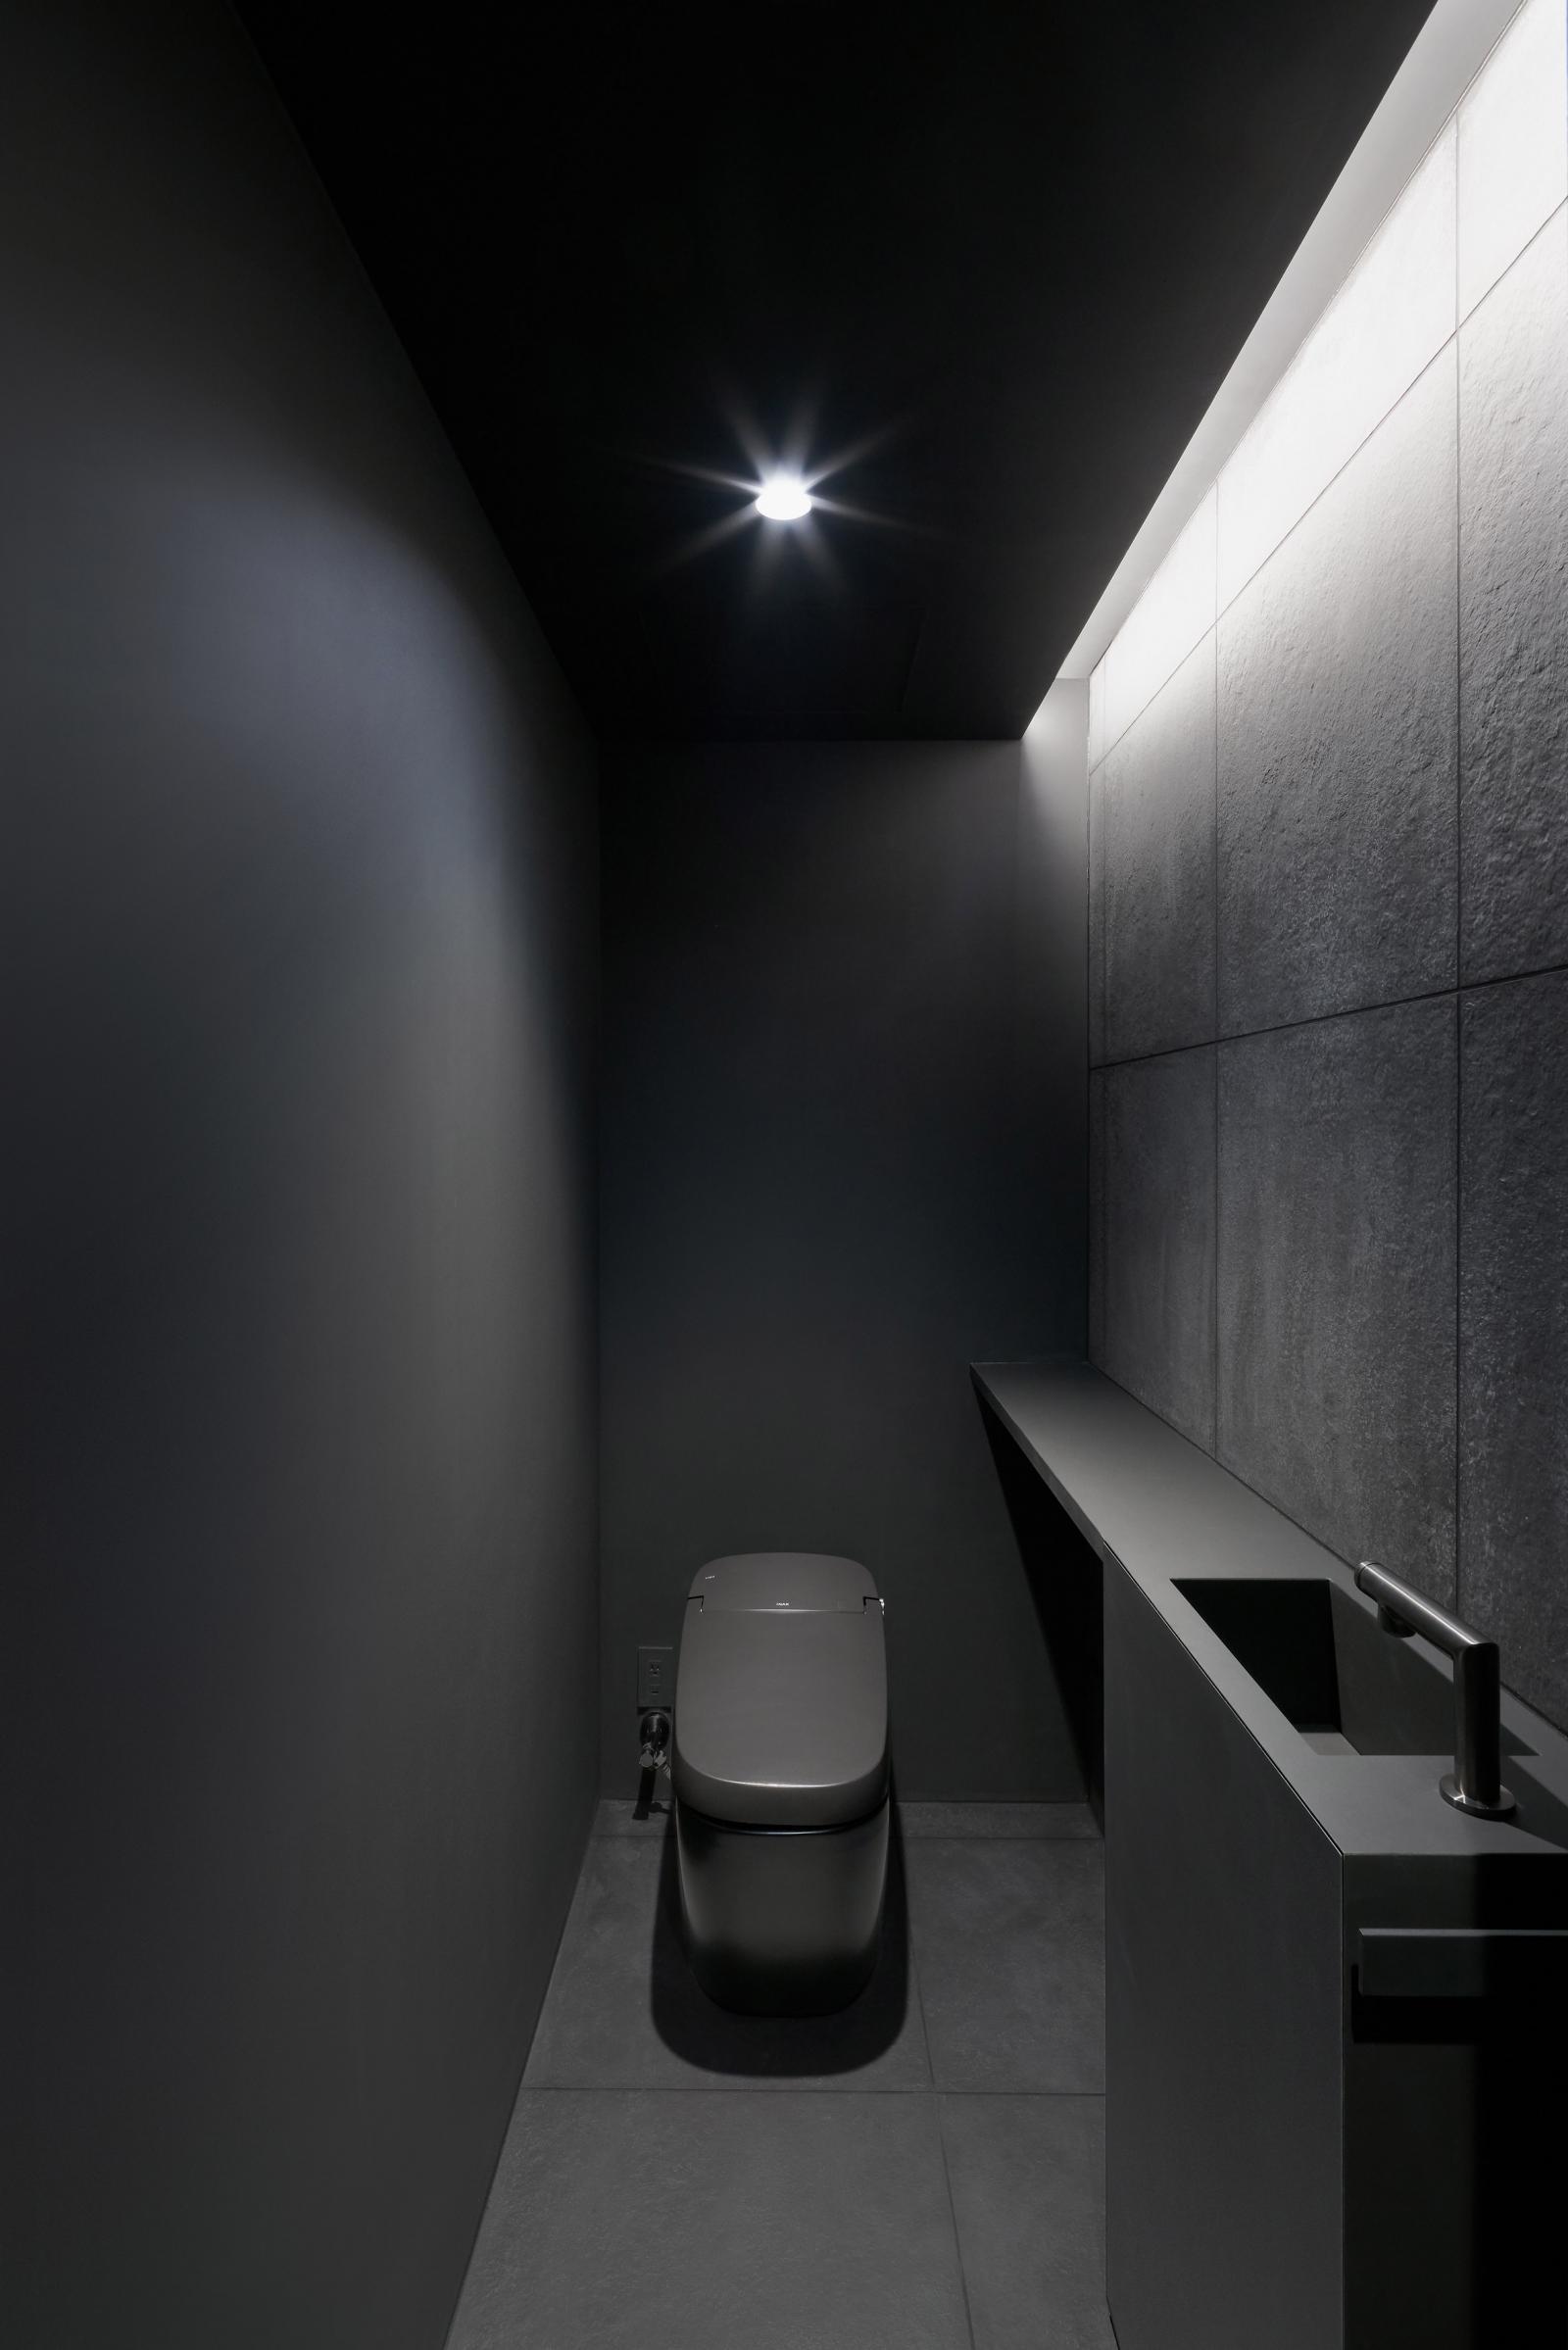 Hình ảnh phòng vệ sinh màu đen ấn tượng với khe thoáng trên trần lấy sáng